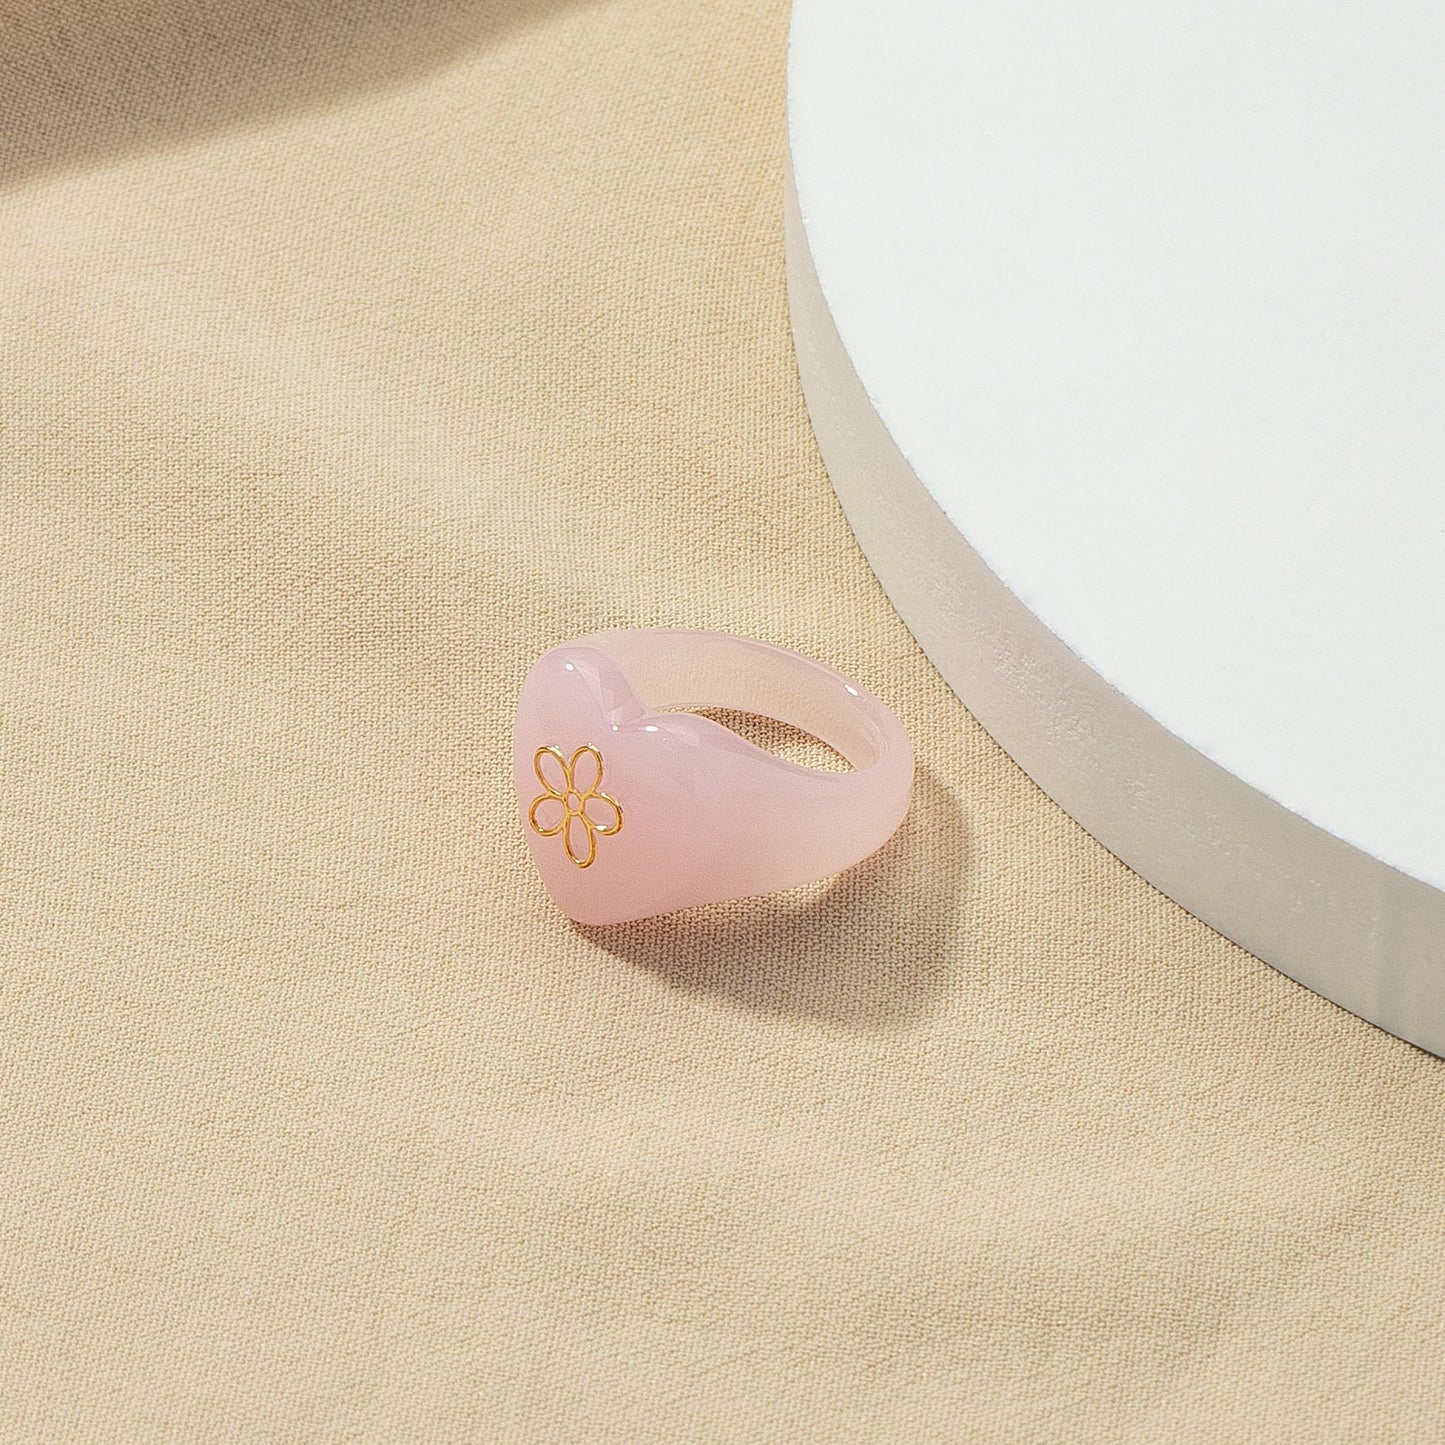 Chic European & American Jewelry: Pink Resin Flower & Instagram Rings